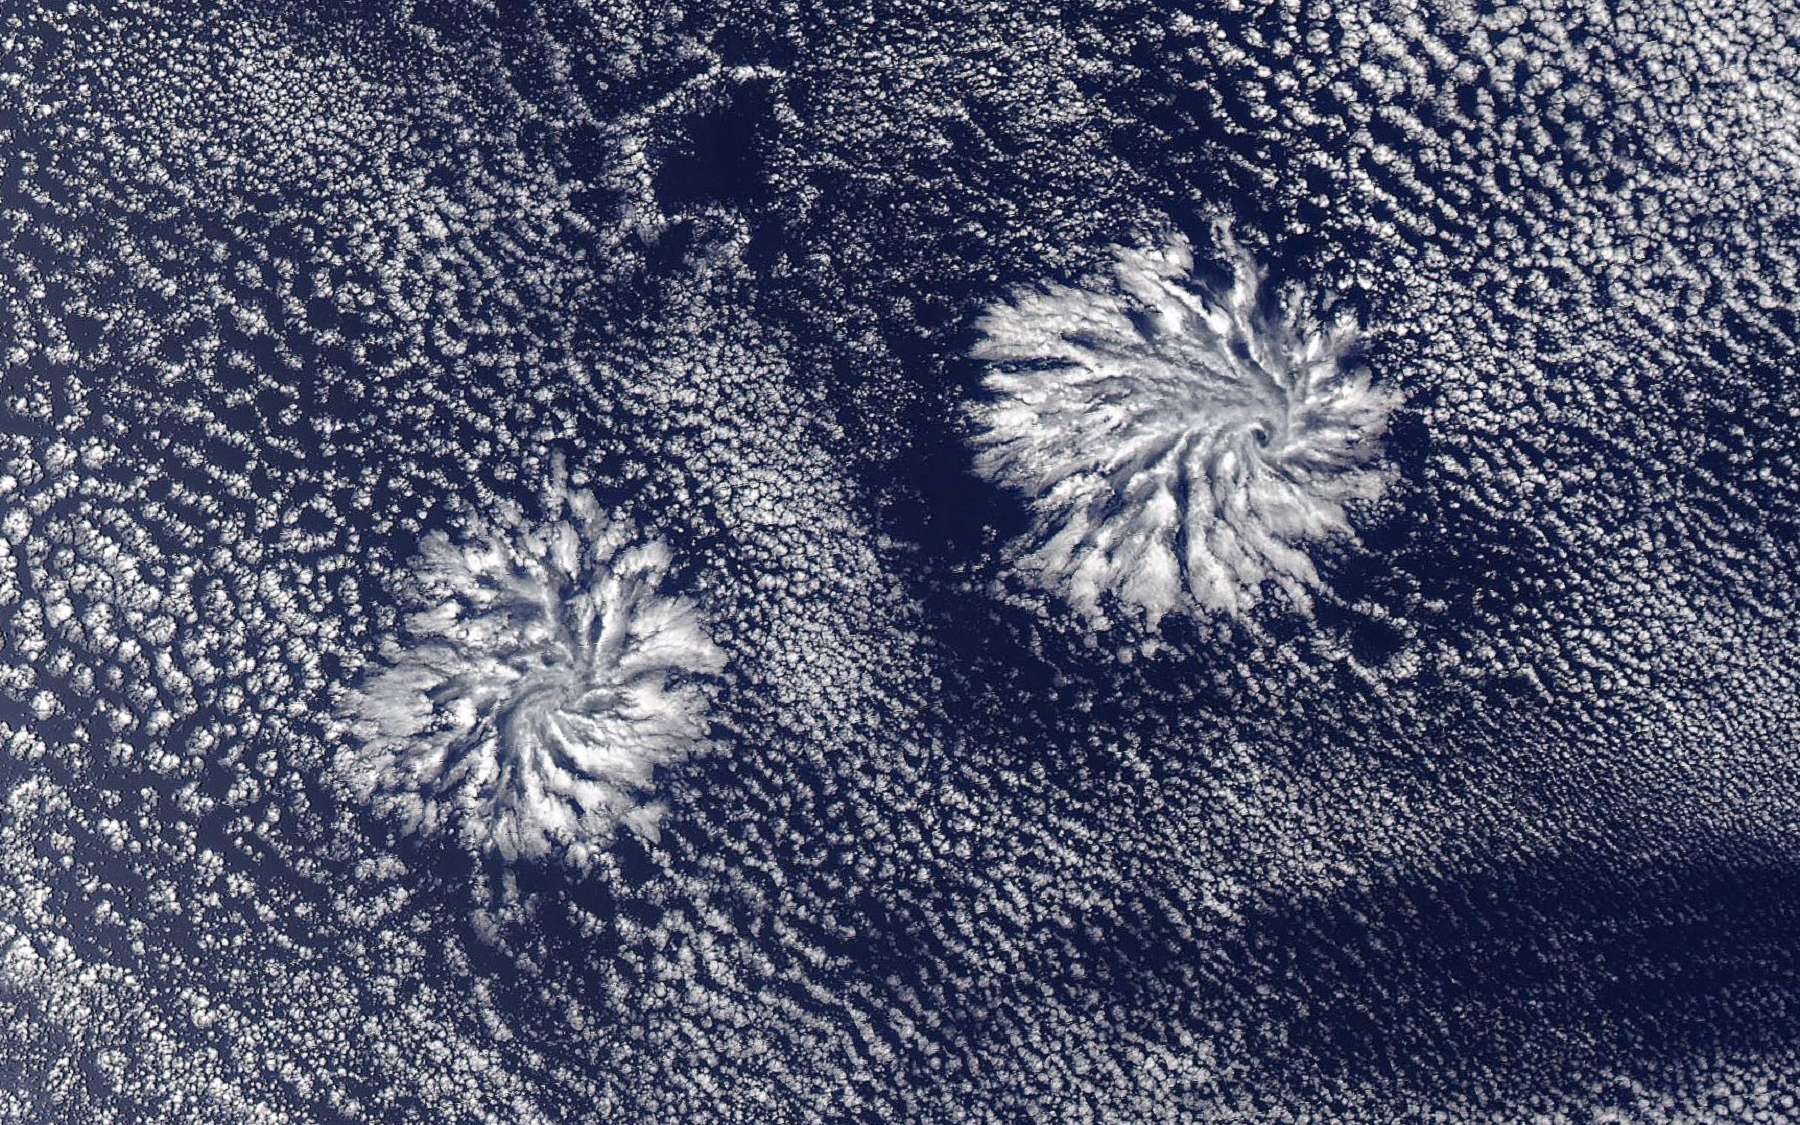 Phénomène météo extraordinaire : les étranges nuages actinoform